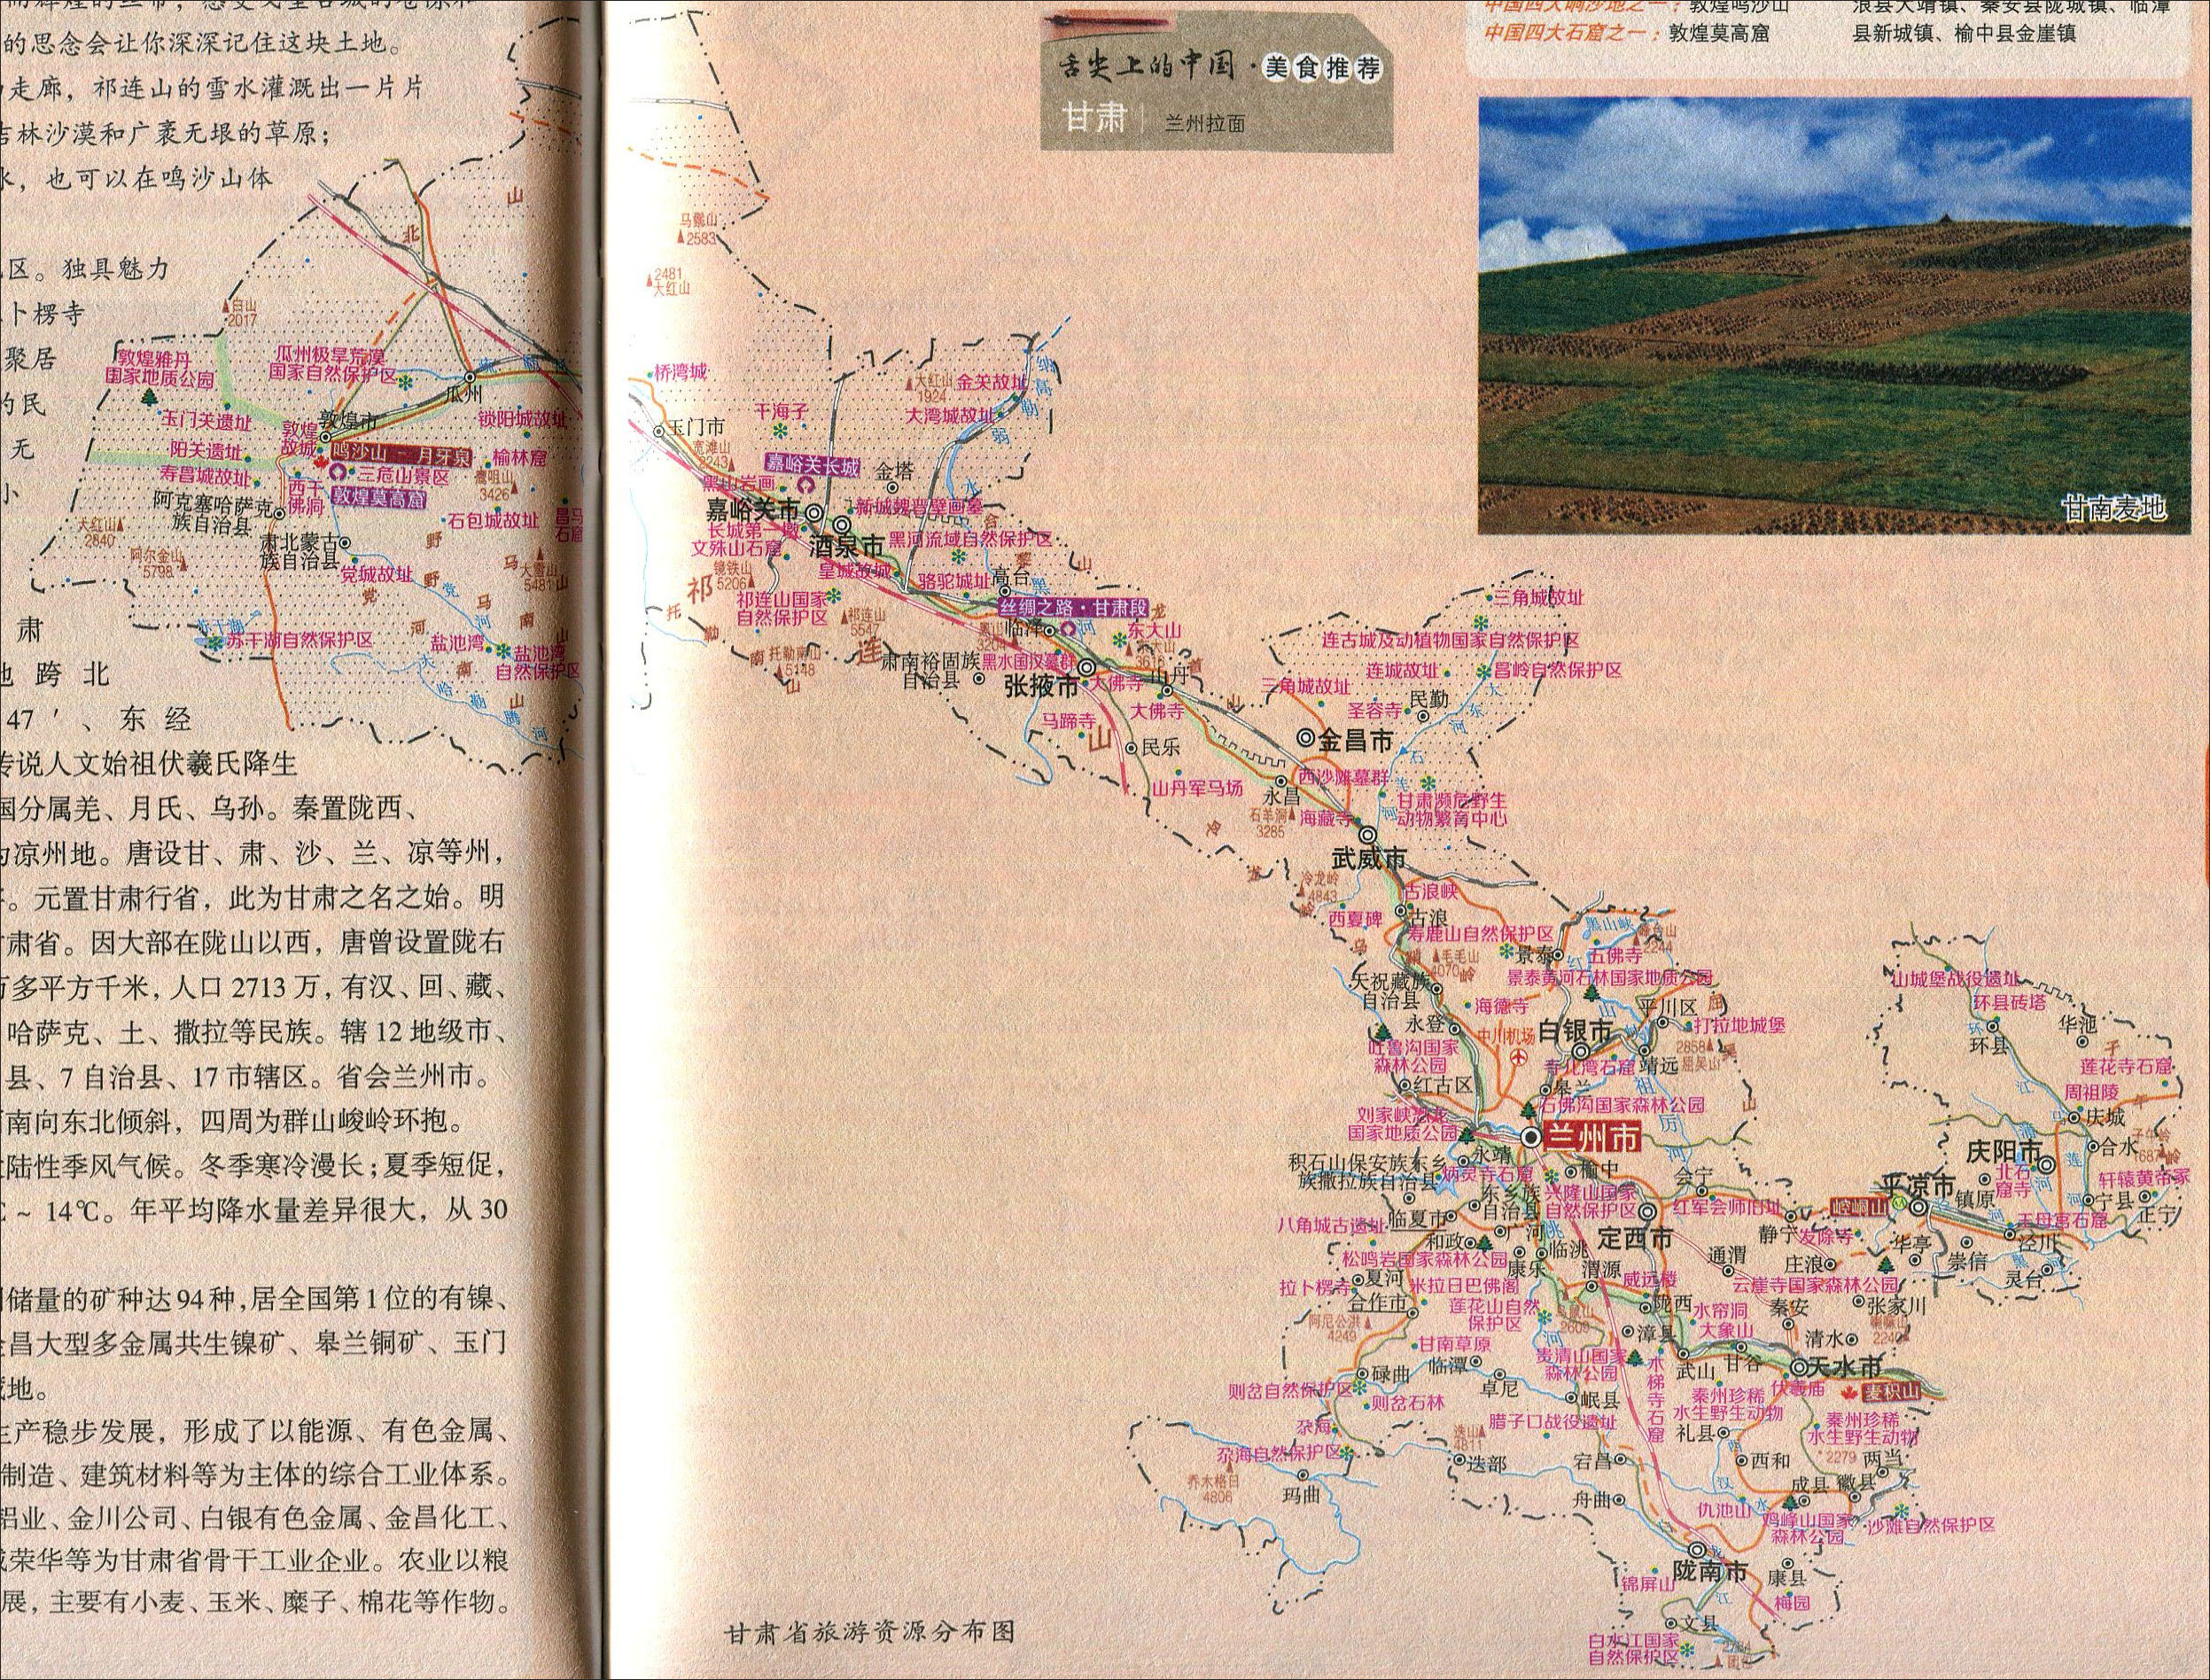 地图 甘肃旅游 >> 甘肃省旅游资源分布图  景点导航:世界旅游  中国图片